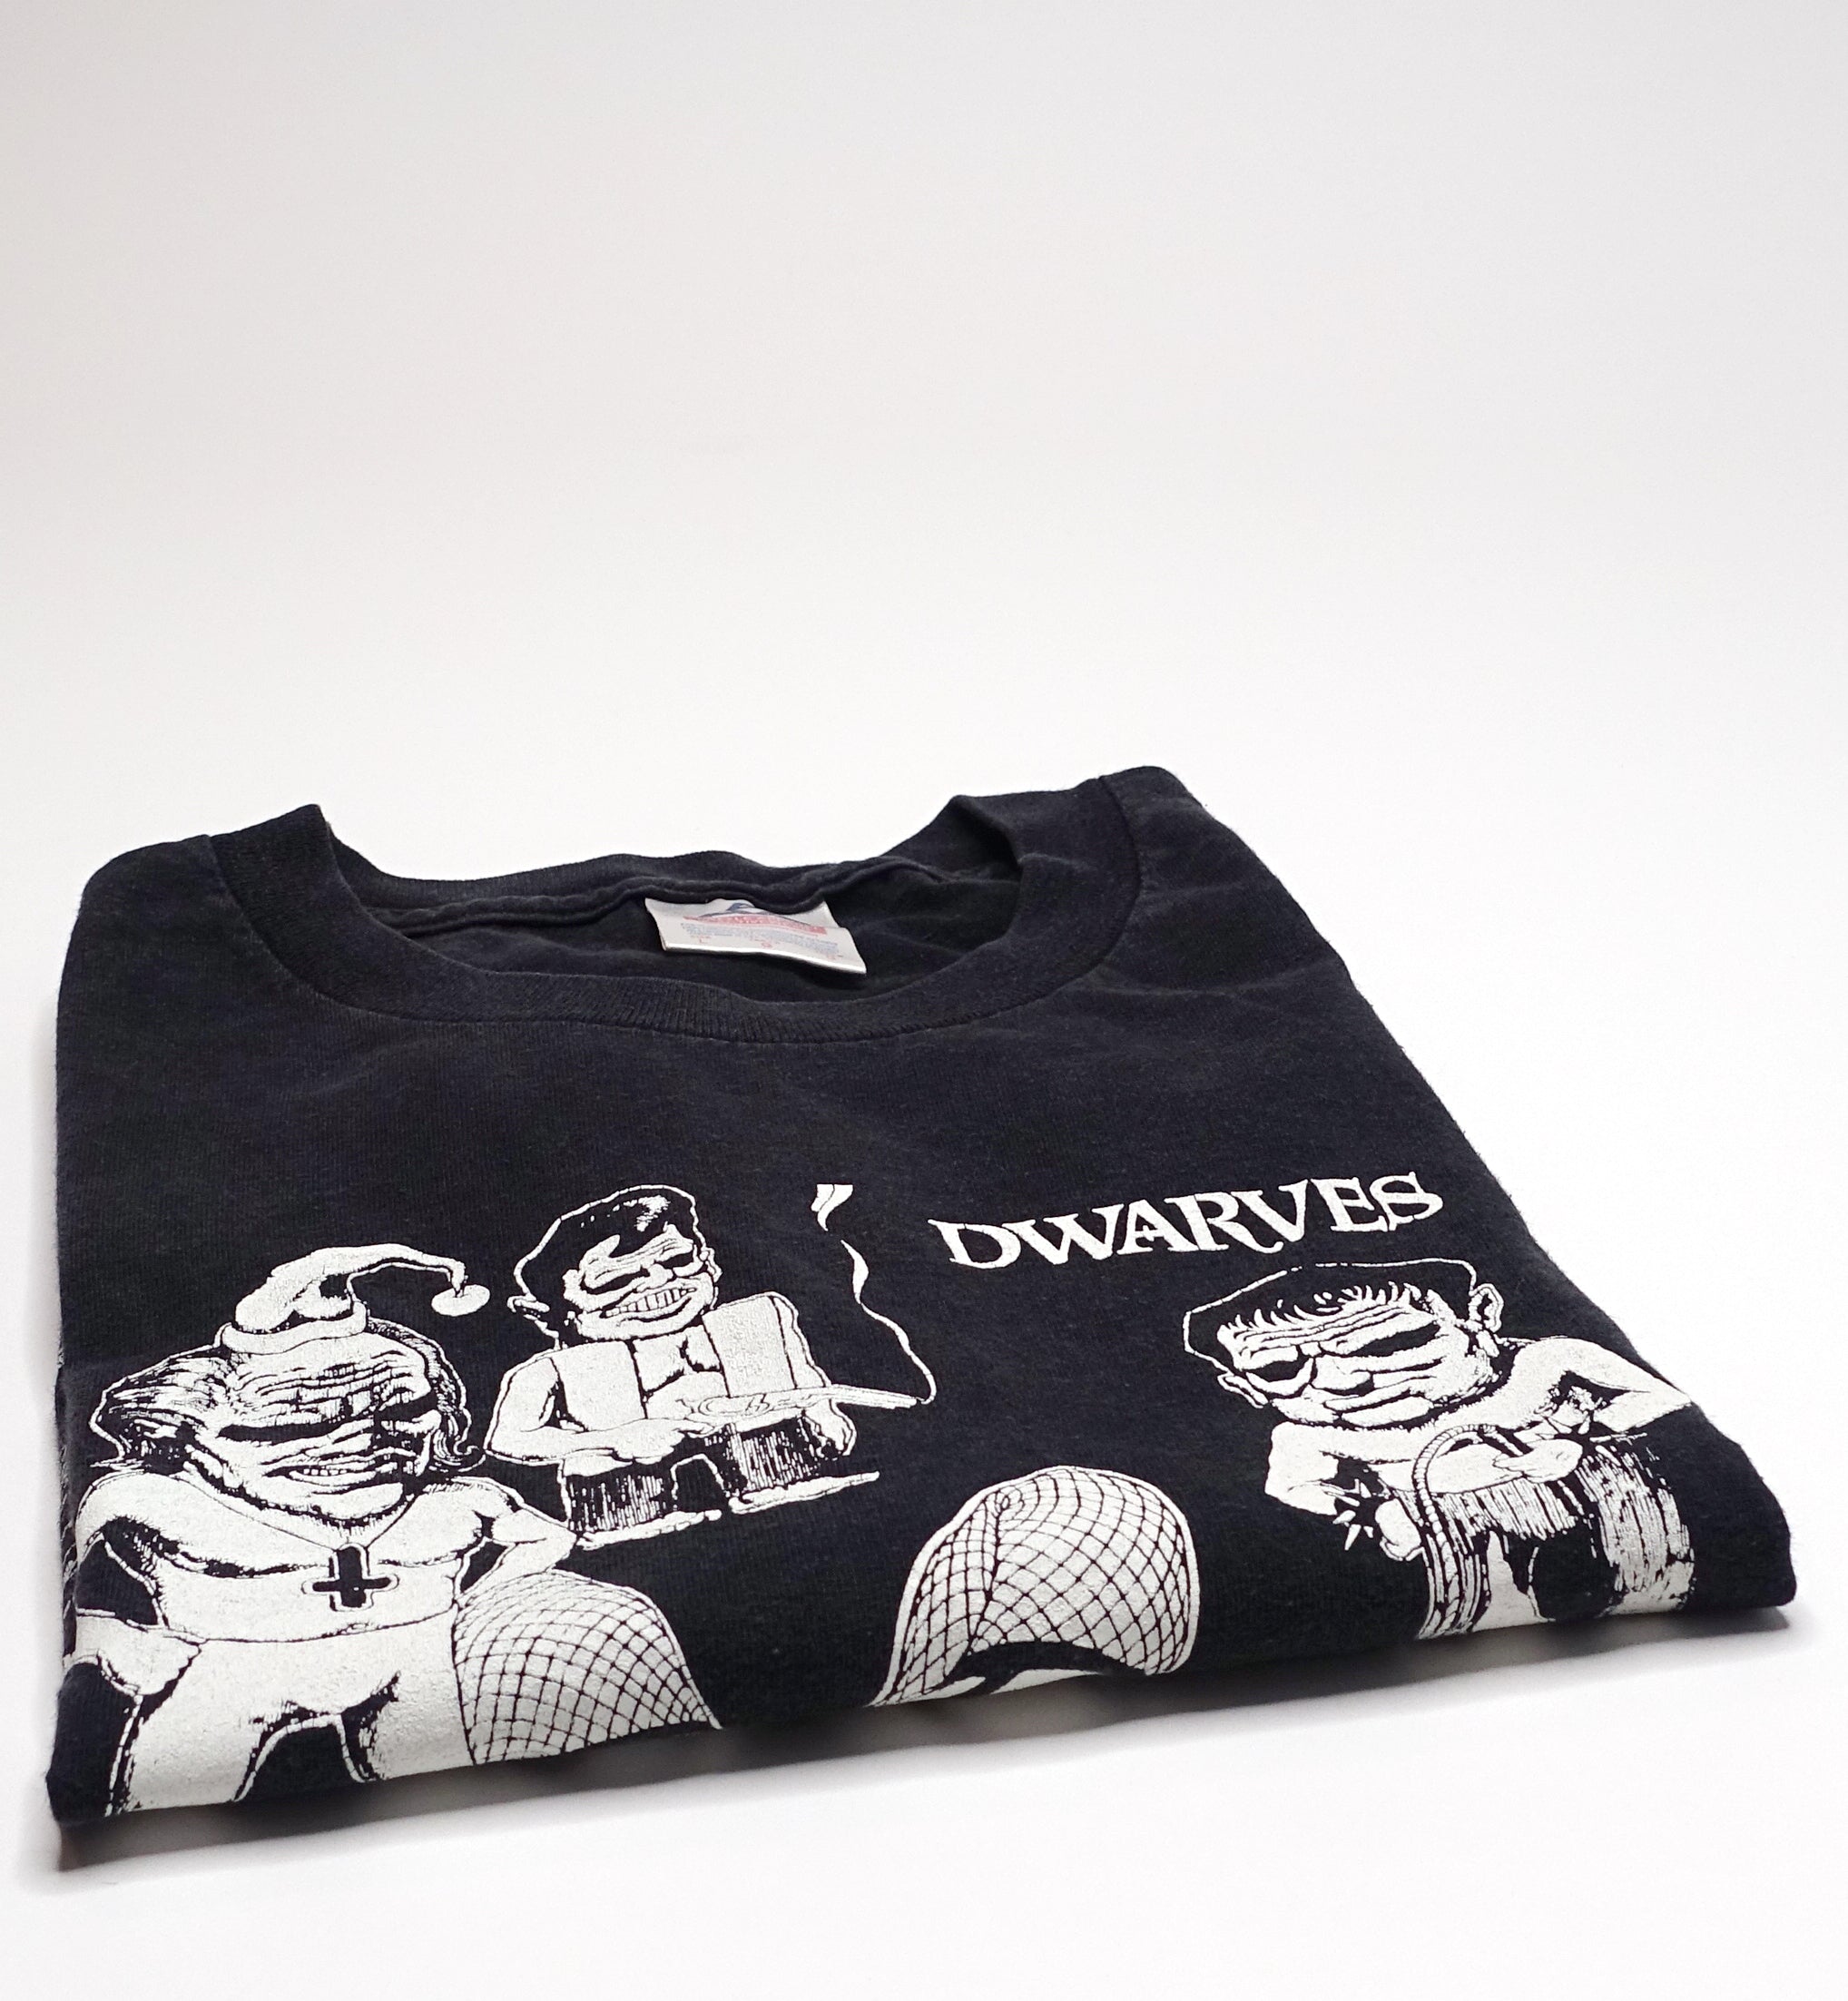 Dwarves ‎– Toolin' For A Warm Teabag Shirt Size Large